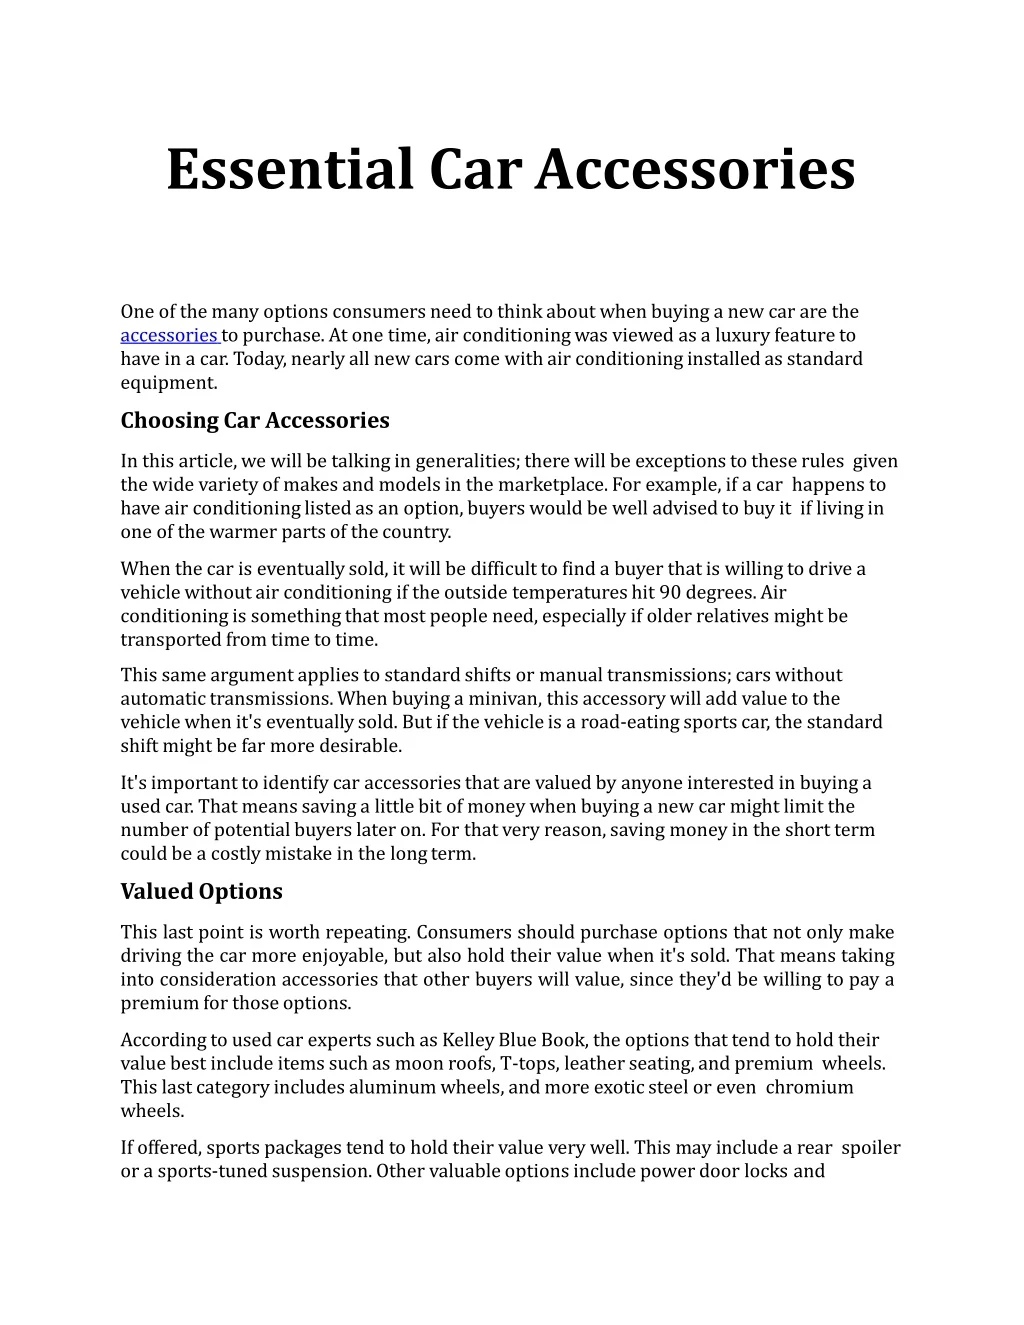 essential car accessories